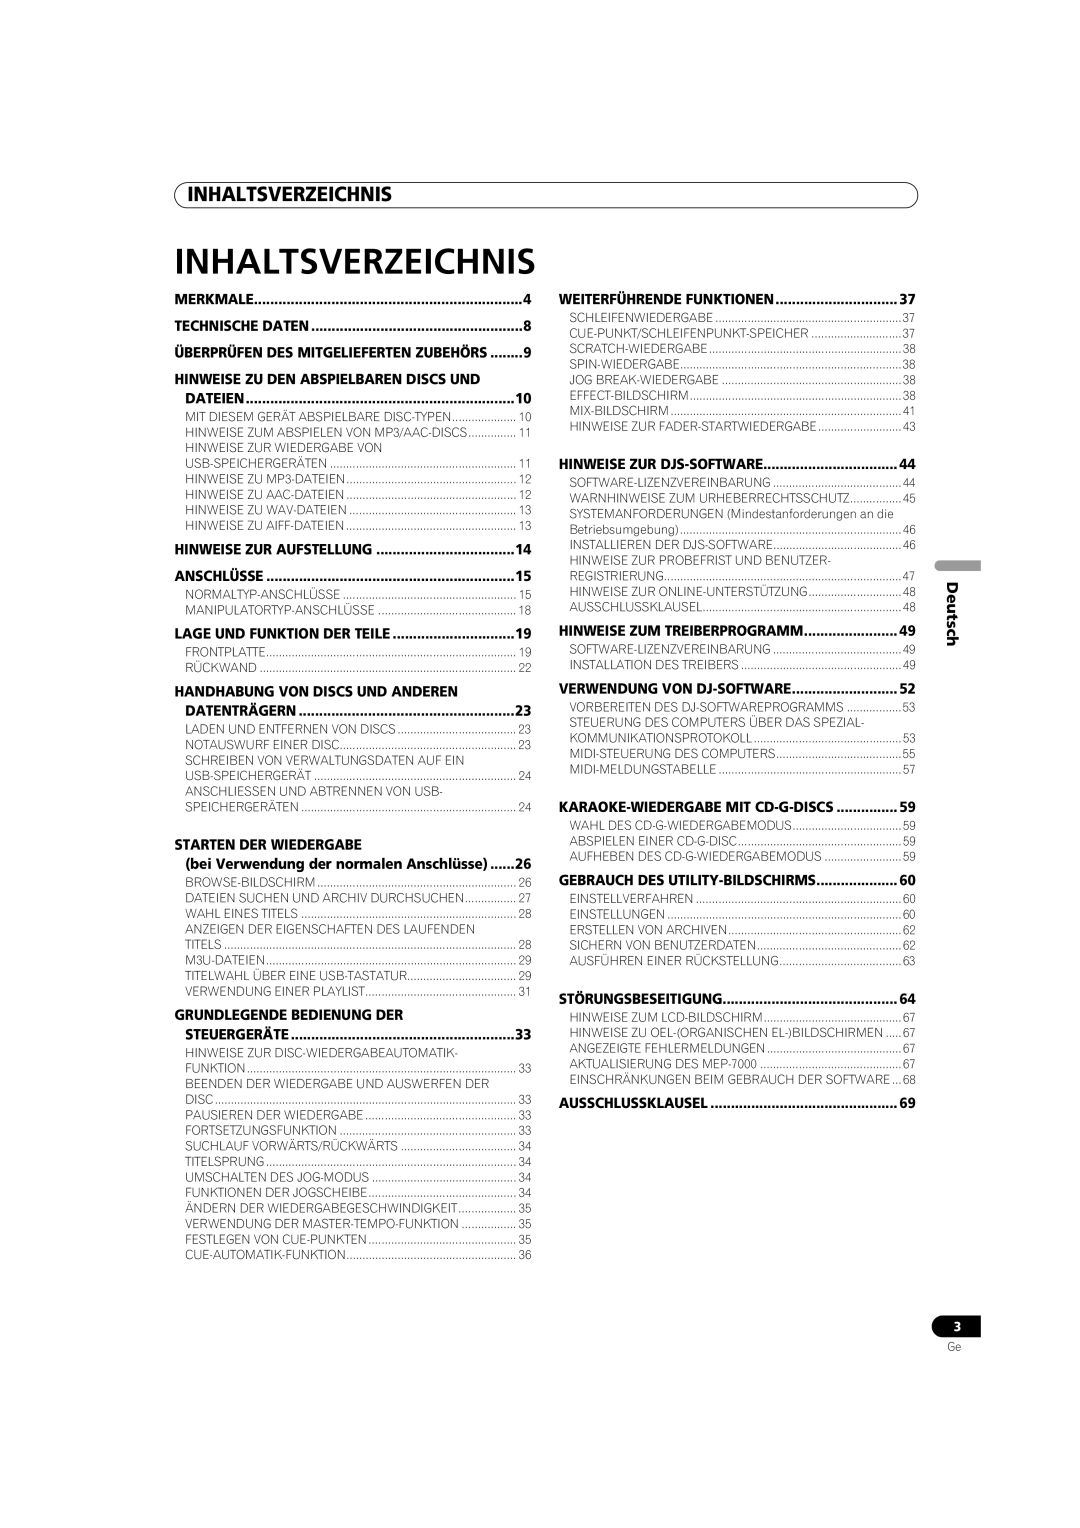 Pioneer MEP-7000 operating instructions Inhaltsverzeichnis, Deutsch 